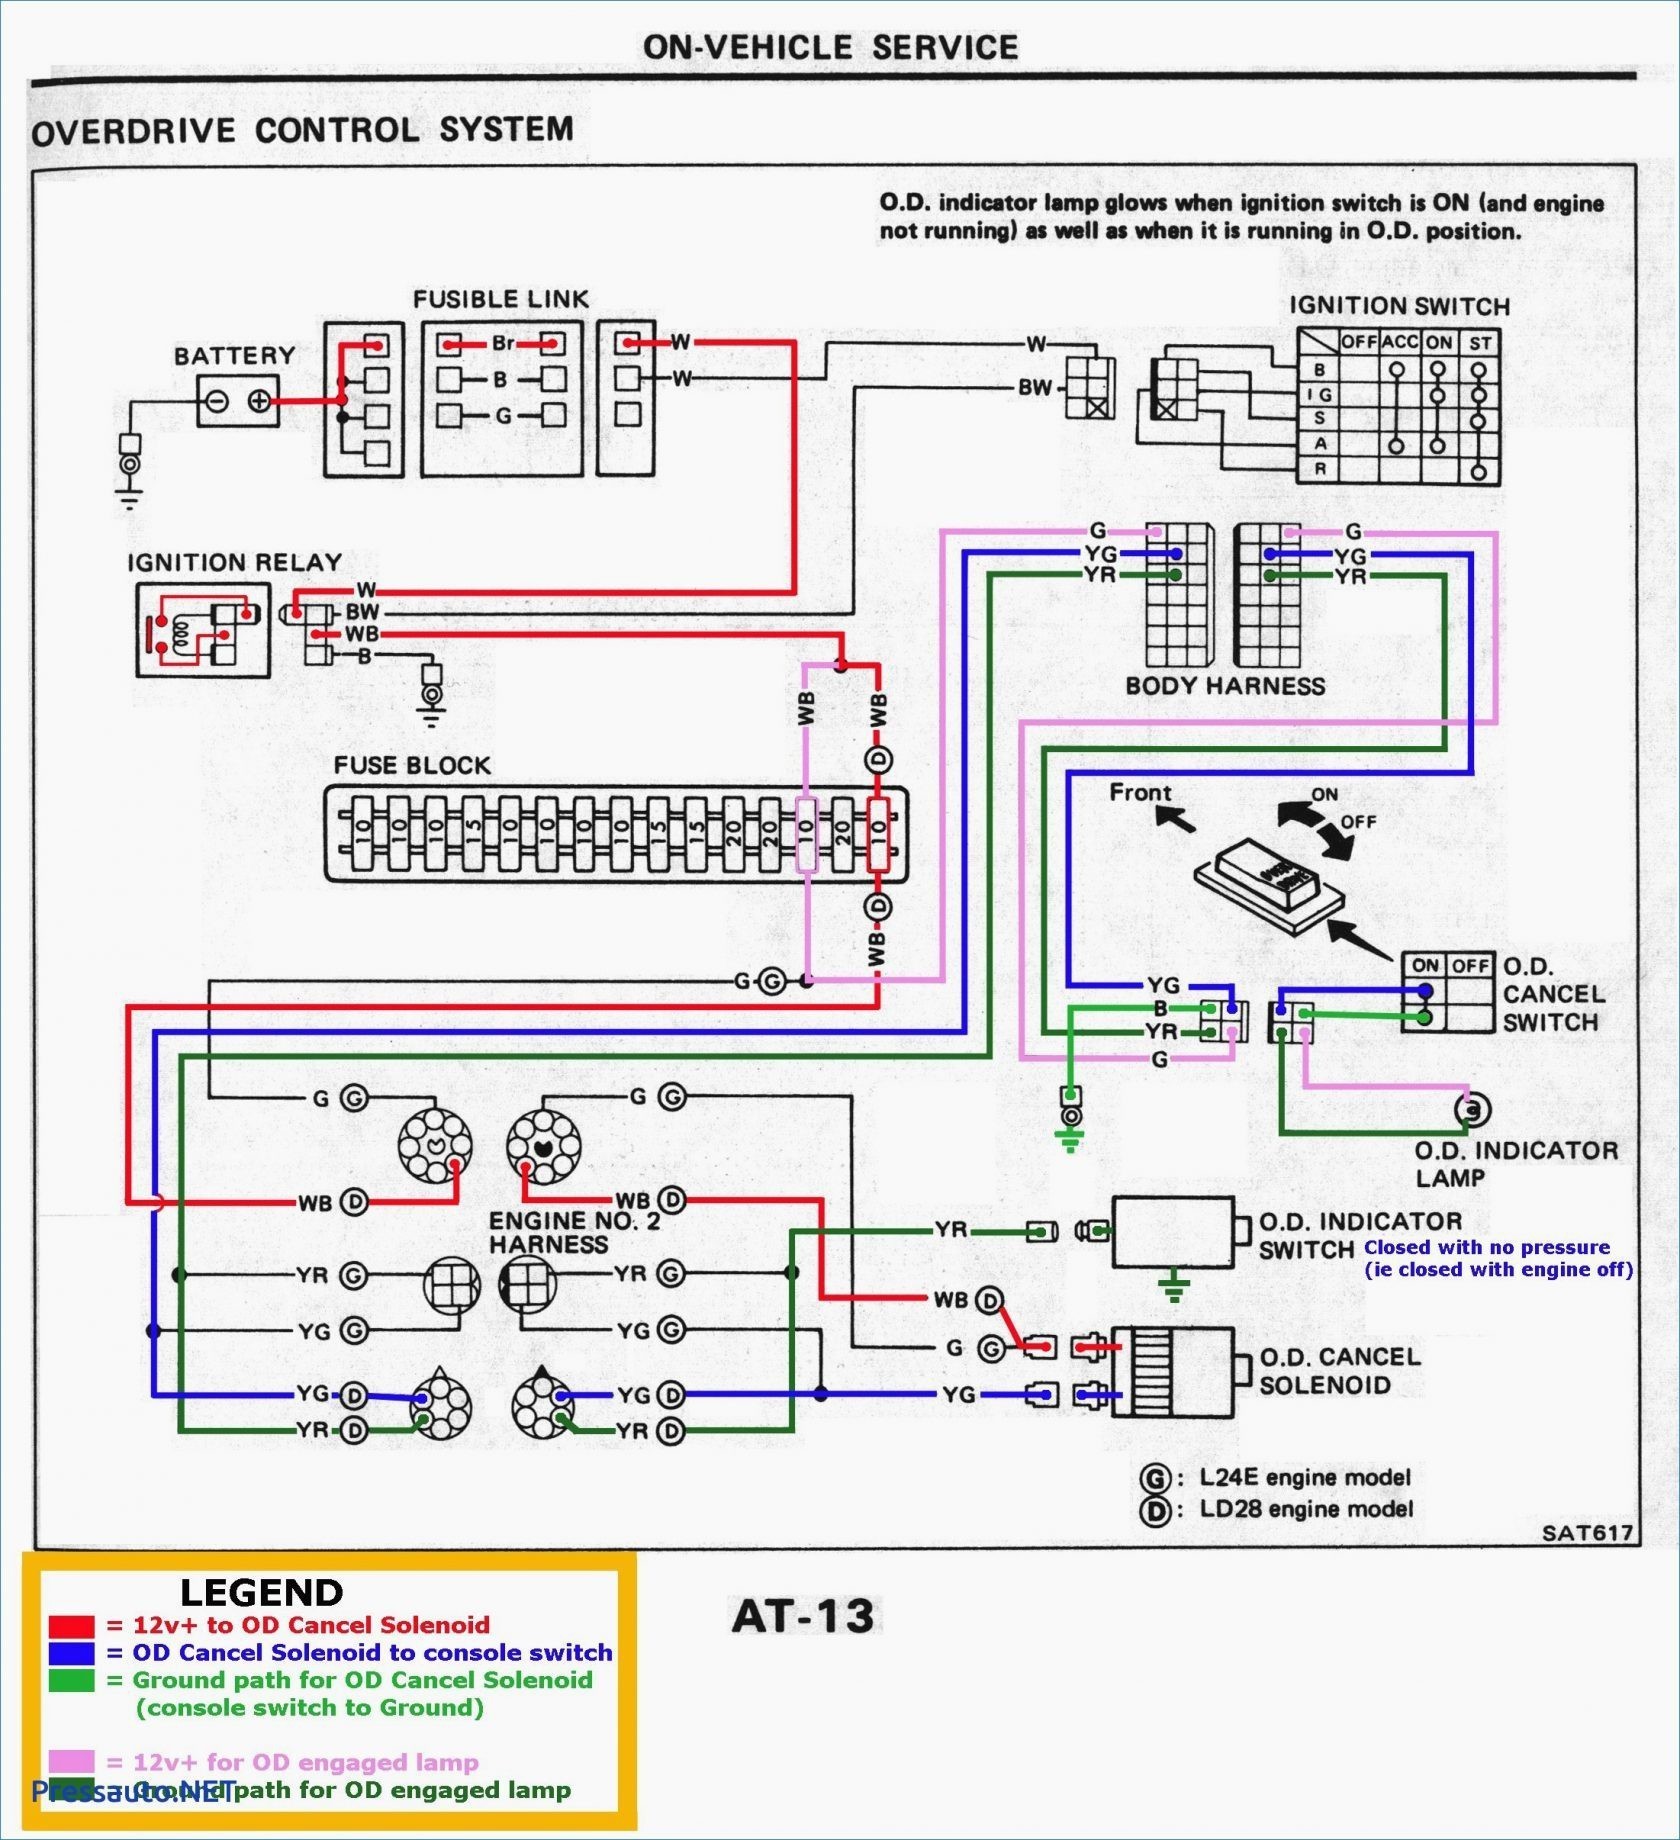 1988 Suzuki Samurai Ignition Switch Wiring Diagrahm Echlin solenoid Switch Wiring Diagram Of 1988 Suzuki Samurai Ignition Switch Wiring Diagrahm